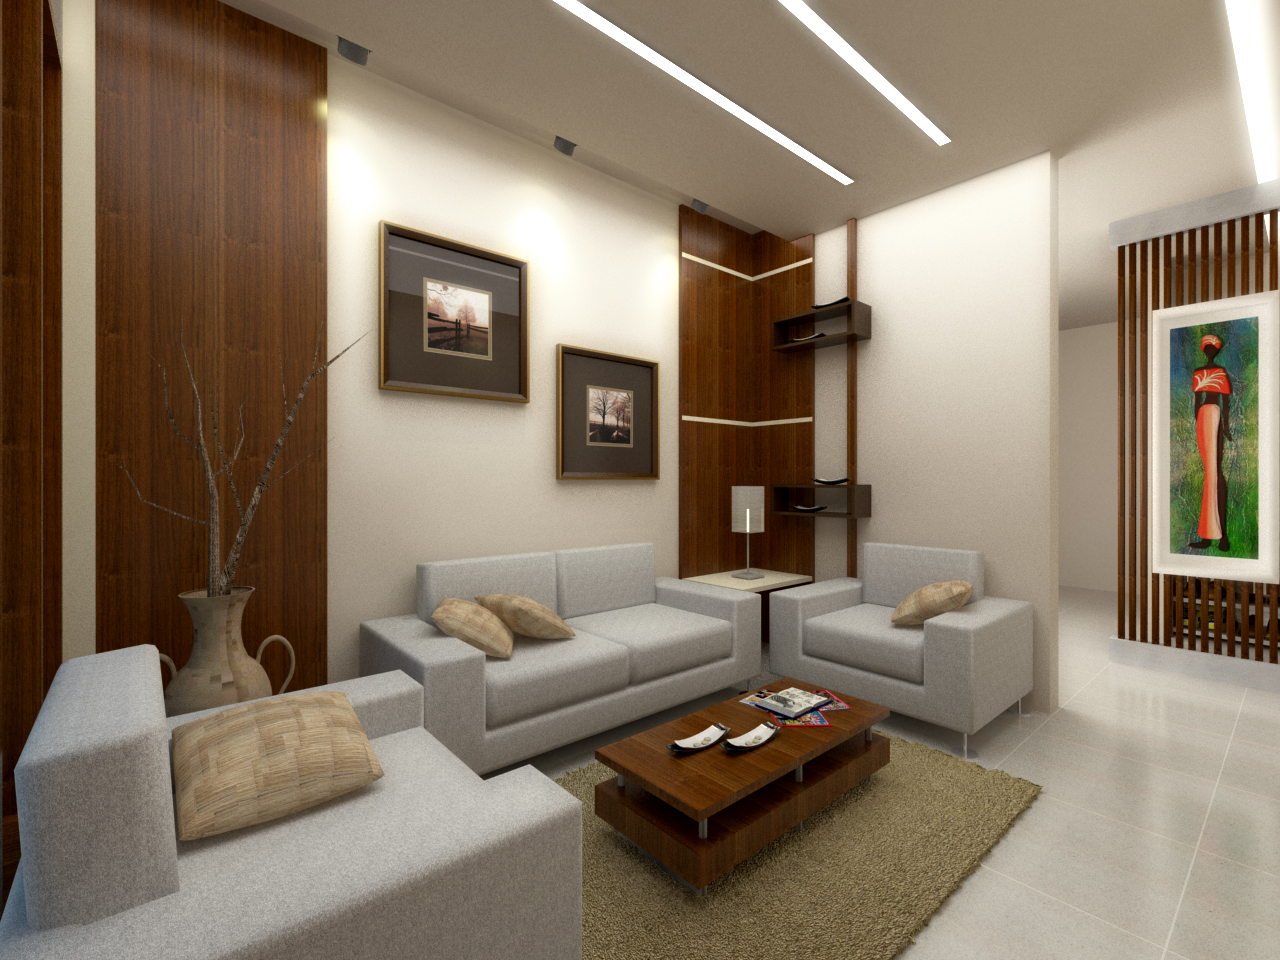 Interior Rumah Sederhana dengan Warna Putih | BangunRumah.com